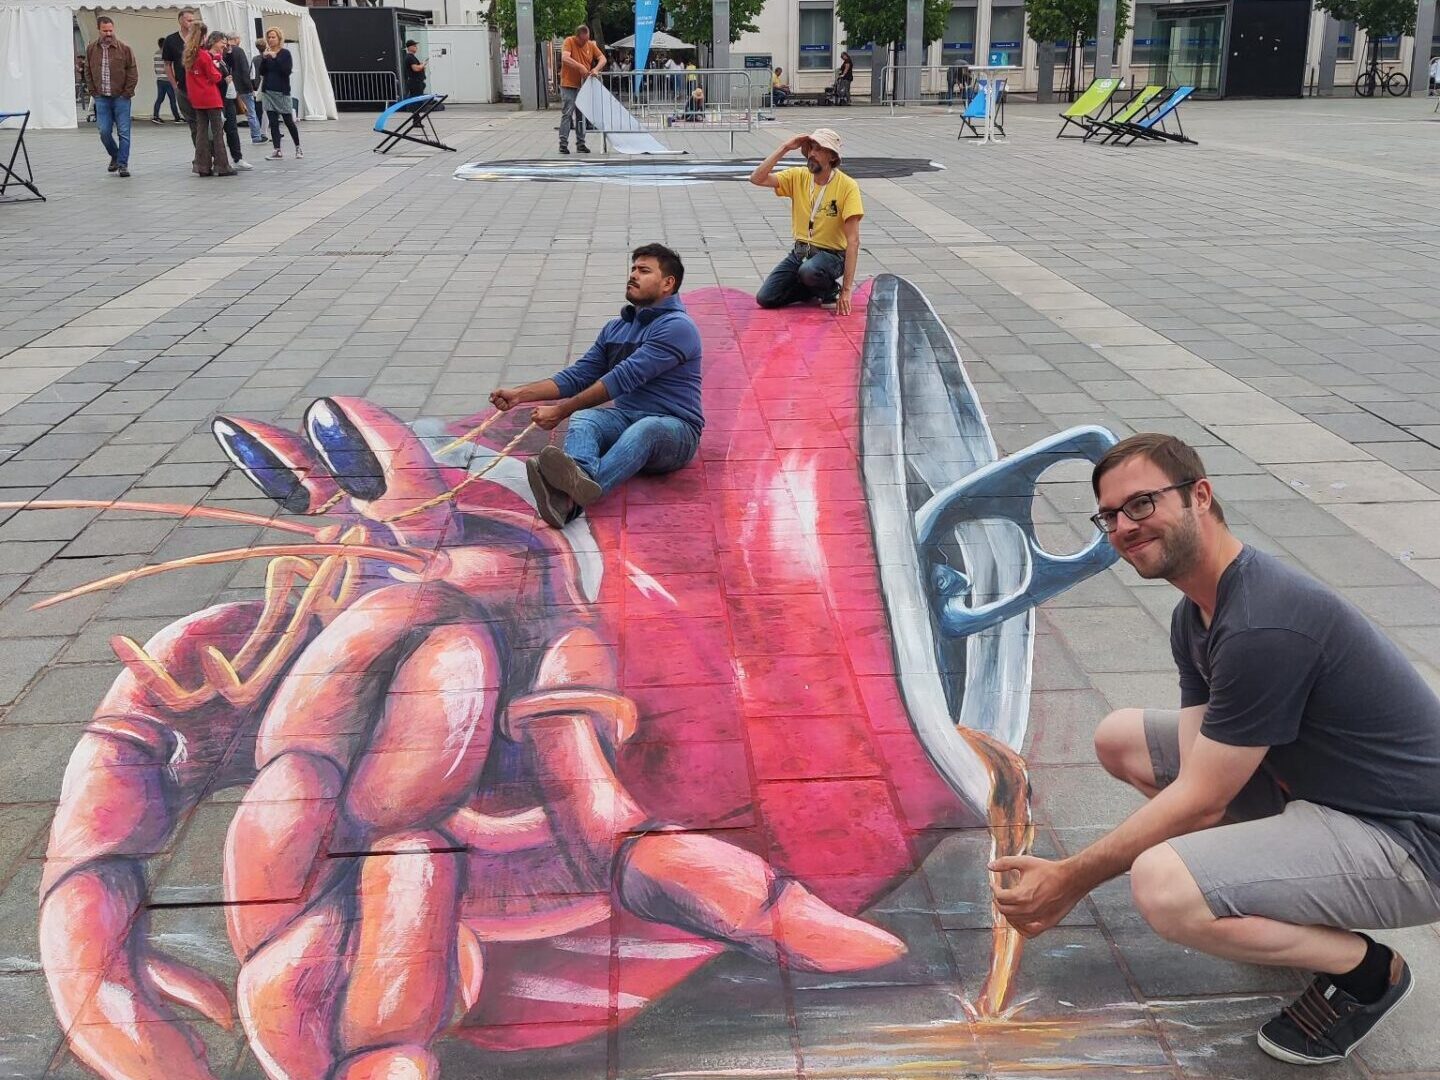 Drei Mämmer posieren auf einem Straßenkunstwerk auf dem Boden, das eine Krabbe zeigt